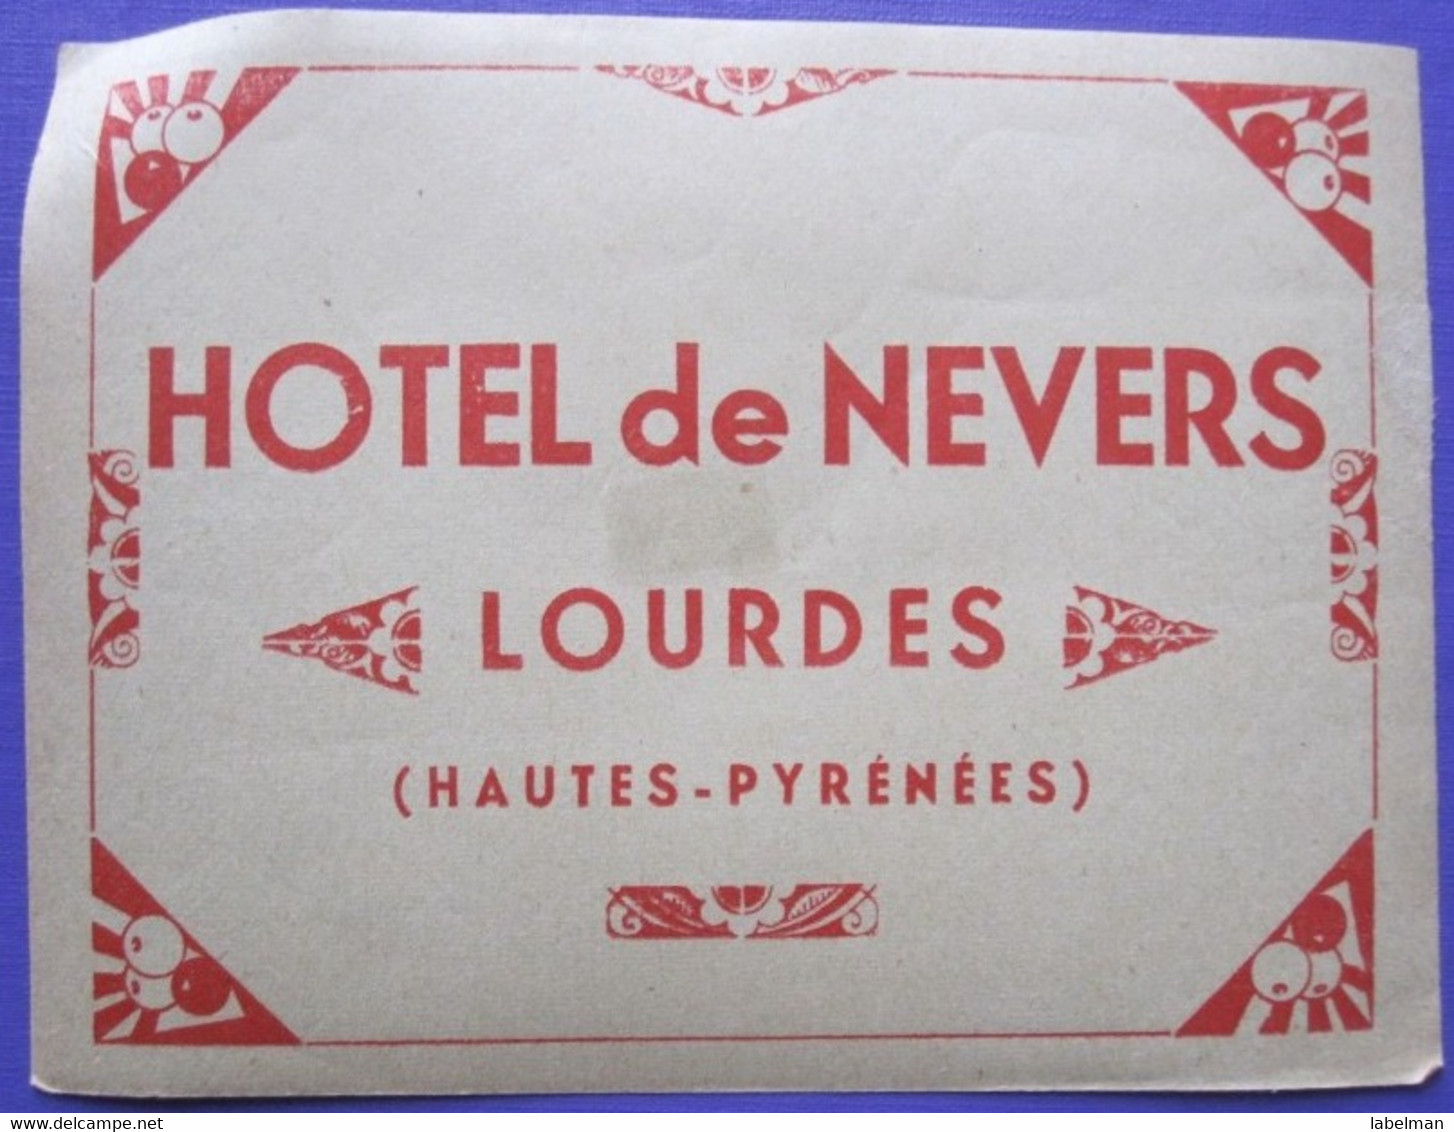 HOTEL AUBERGE NEVERS LOURDES PYRENEES DECAL FRANCE STICKER LUGGAGE LABEL ETIQUETA ETICHETTA ETIQUETTE AUFKLEBER PARIS - Etiquettes D'hotels